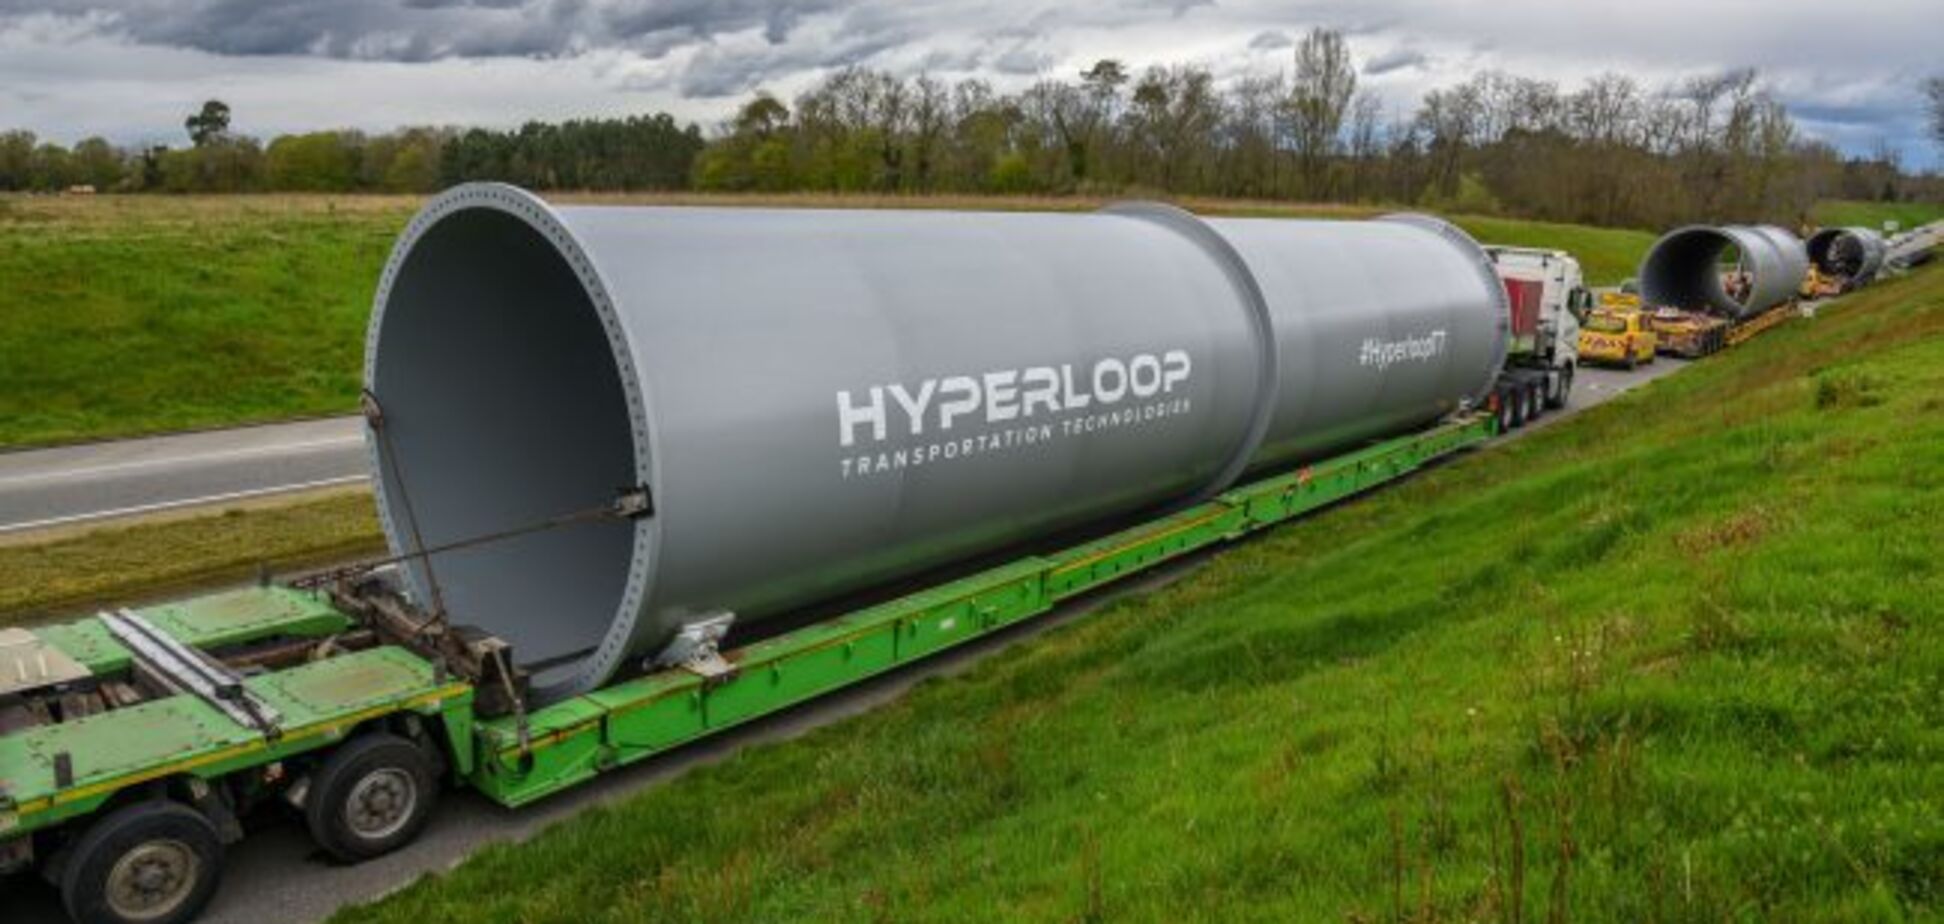 З Києва до Вінниці за 19 хвилин: з'явився несподіваний прогноз щодо Hyperloop в Україні